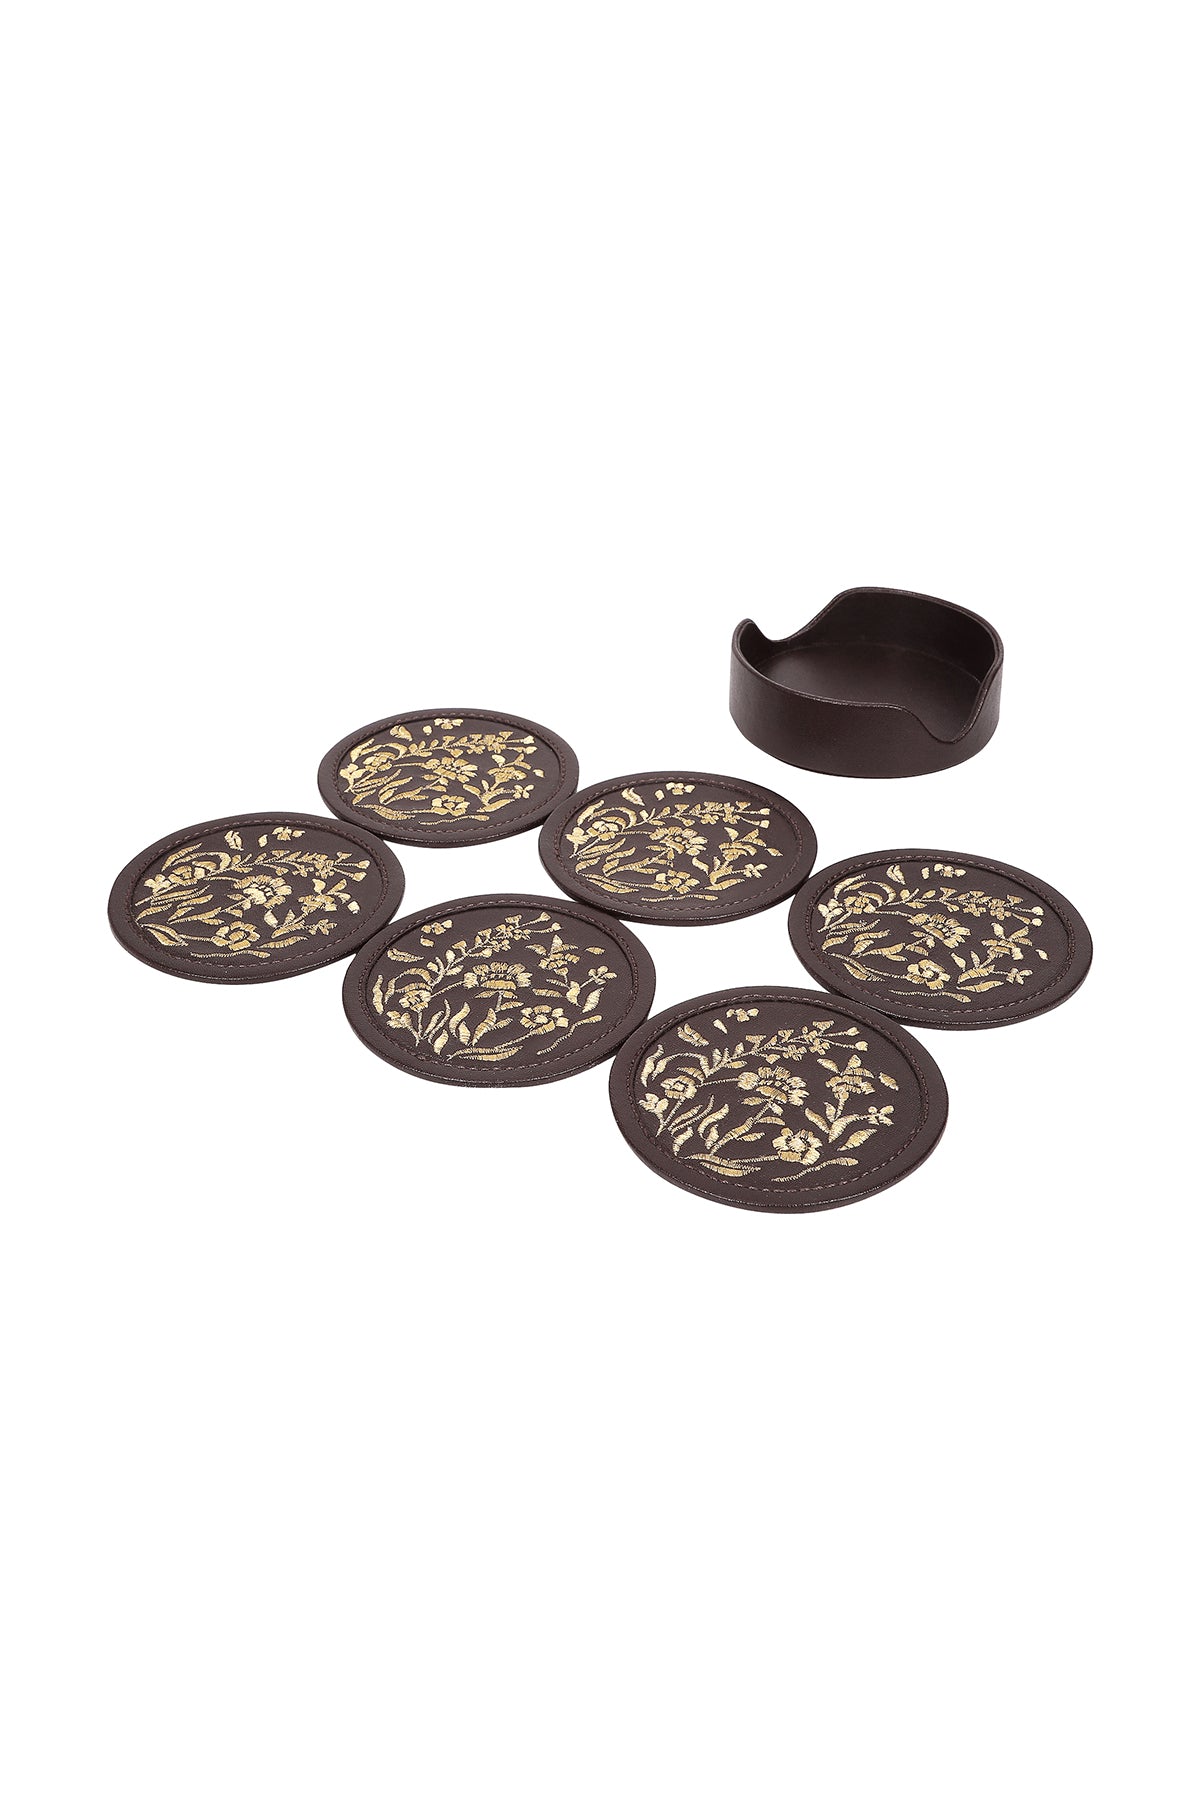 Maple Coaster Set (Set of 6)- Chocolate